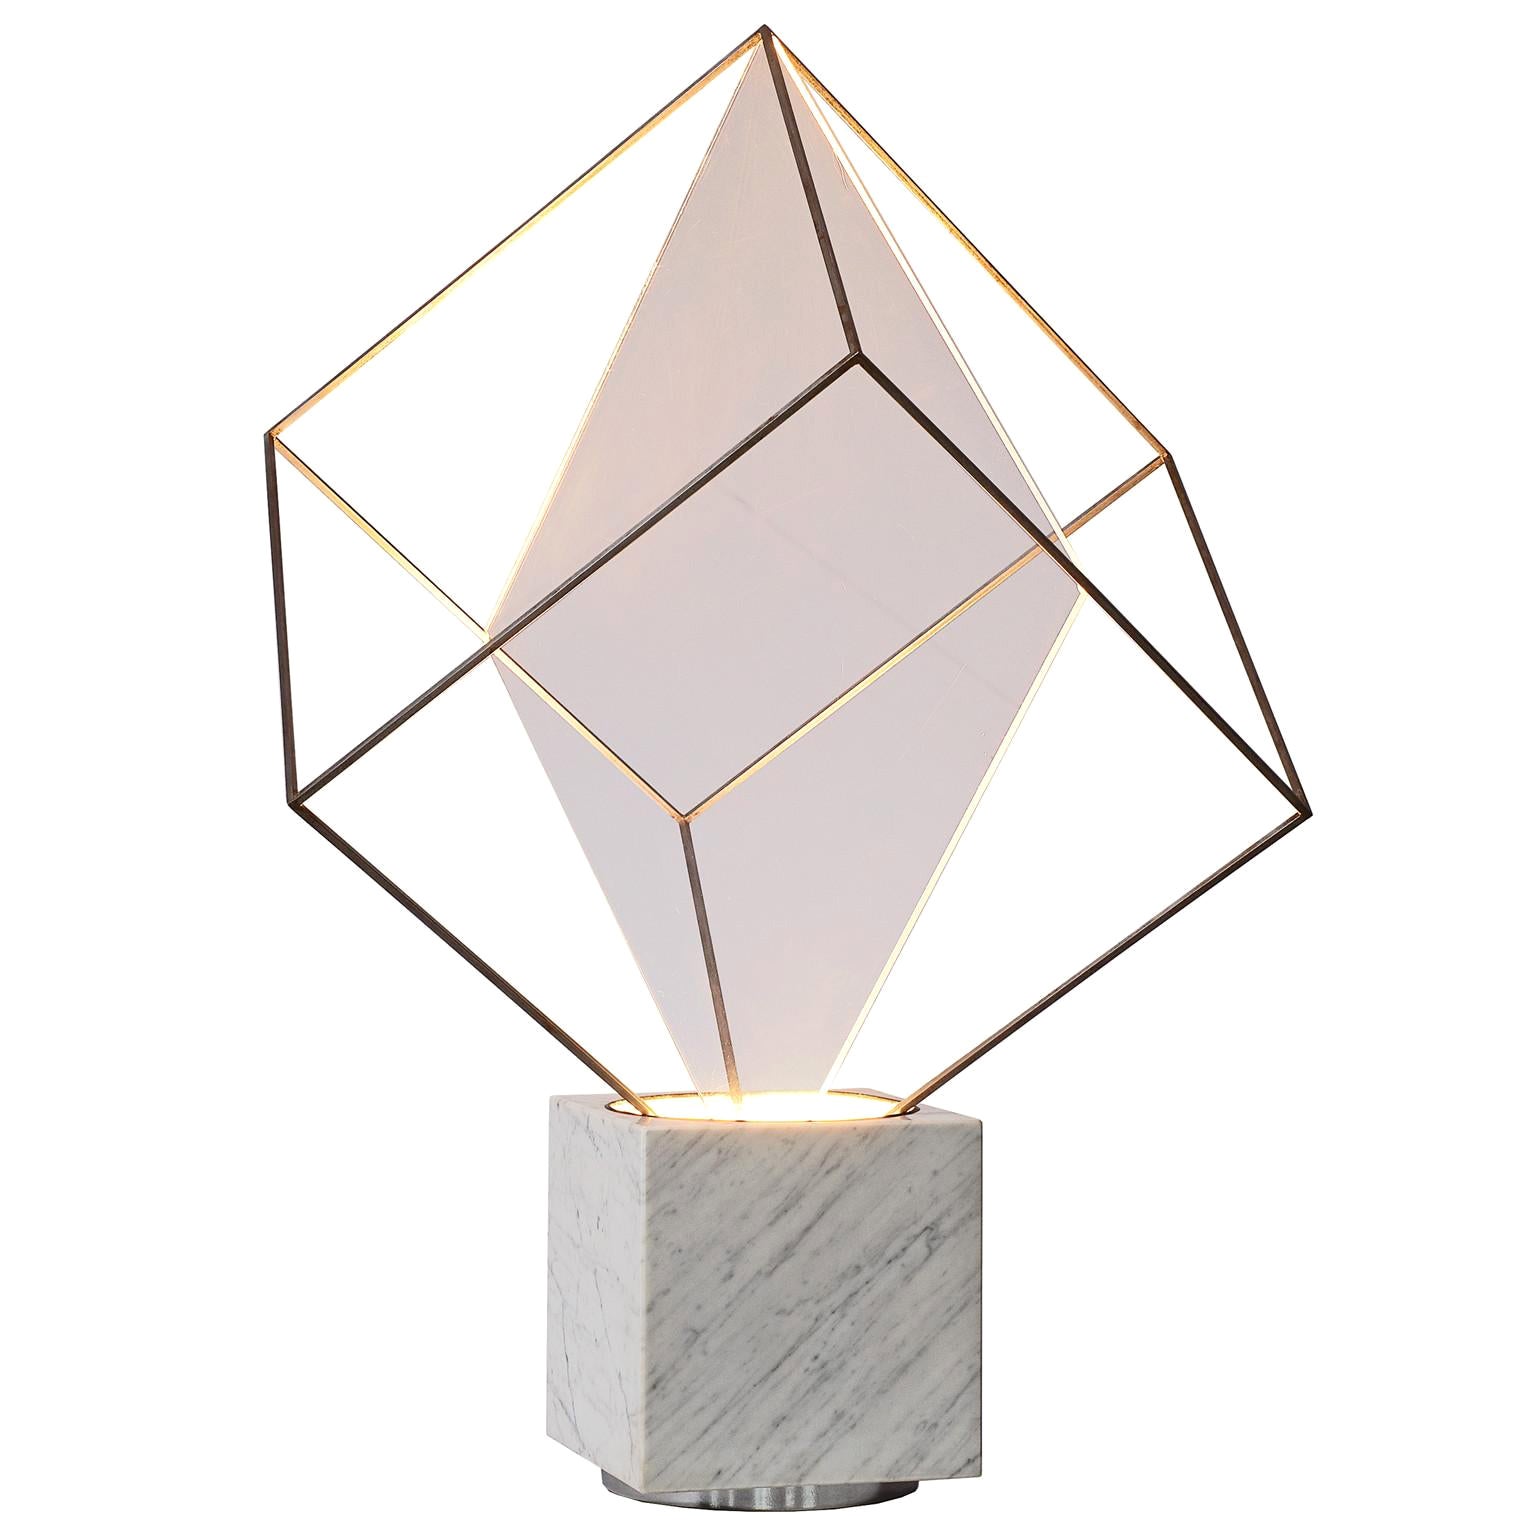 Claudio Salocchi for Lumenform Table Lamp 'Tulpa'